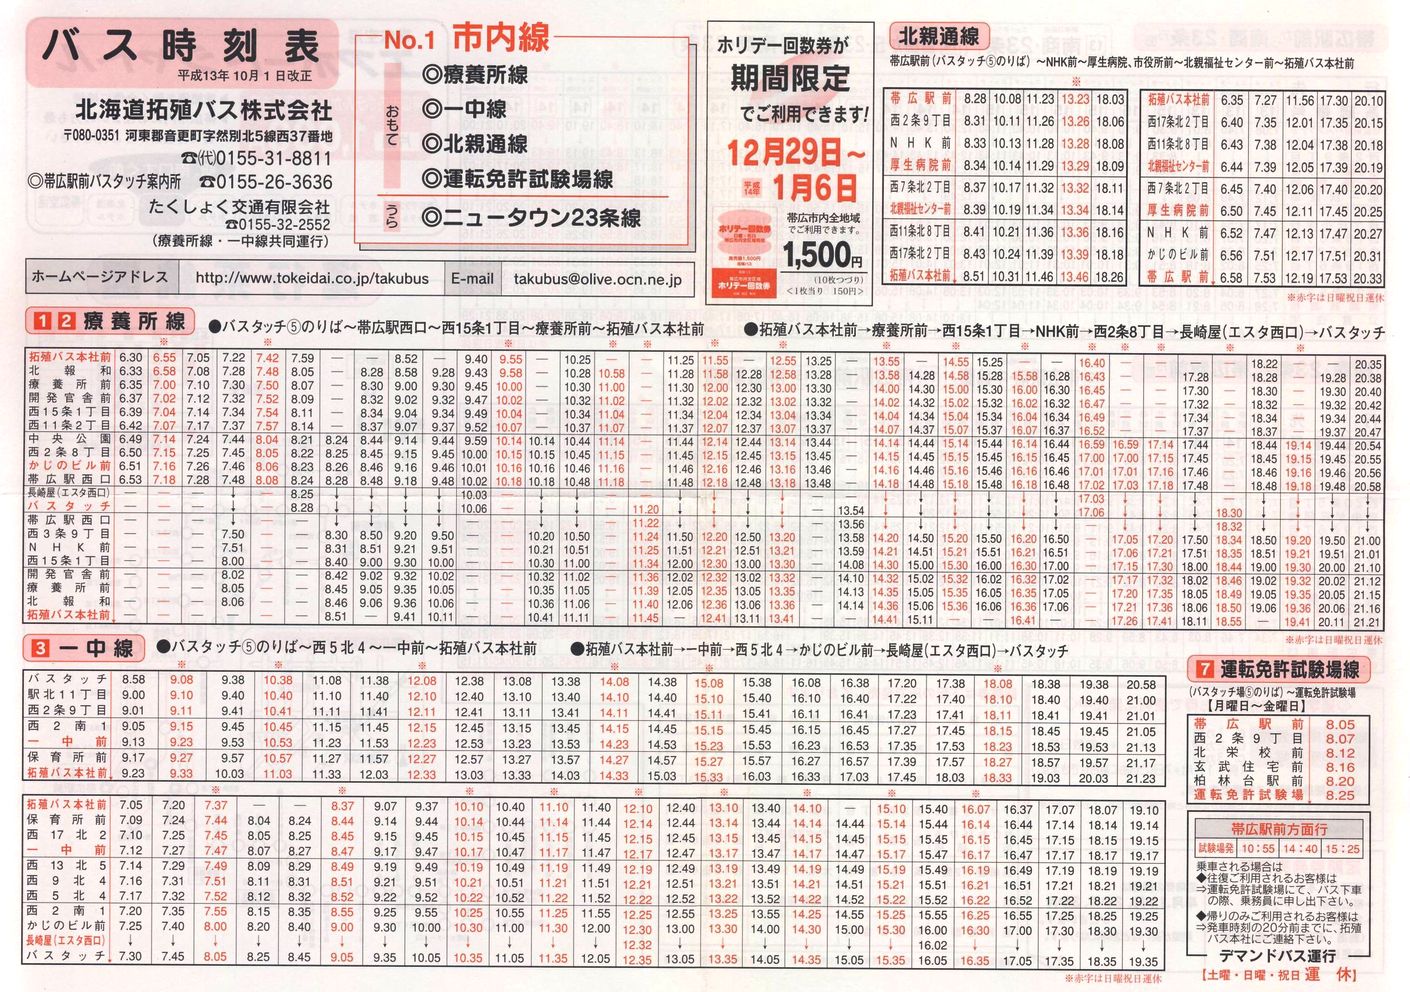 2001-10-01改正_北海道拓殖バス・たくしょく交通_時刻表１表面